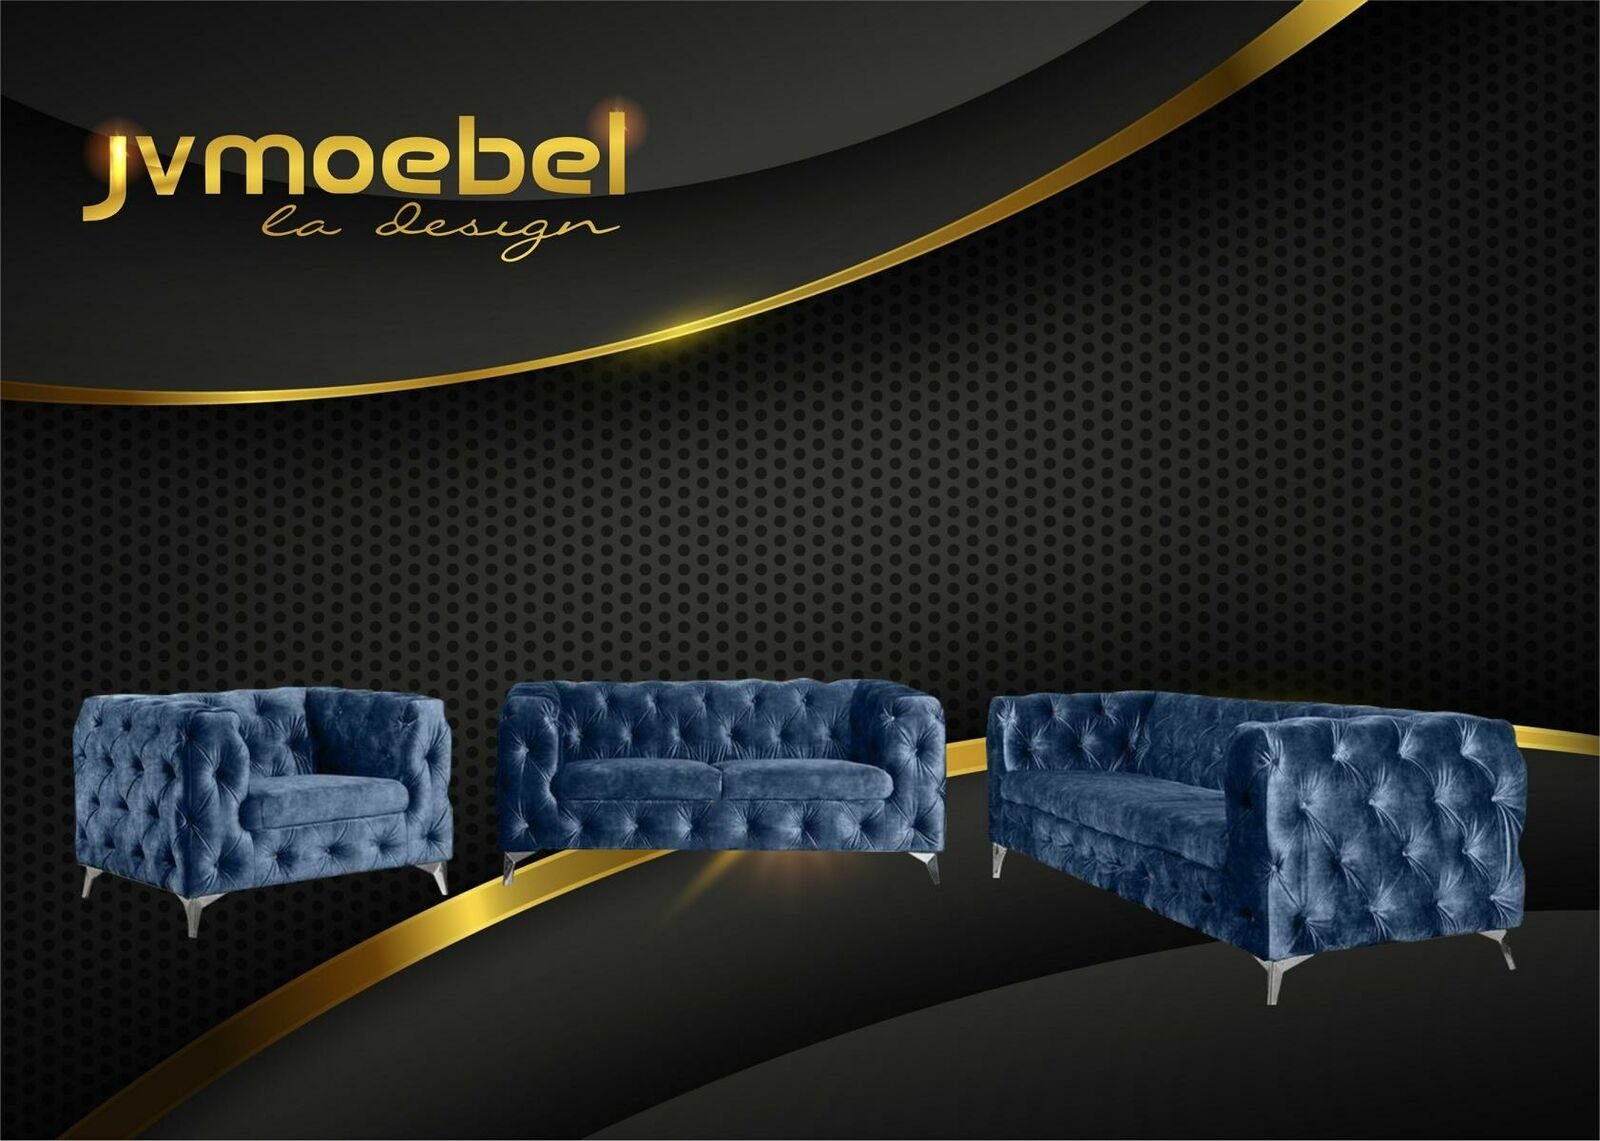 JVmoebel Chesterfield-Sofa, Sofagarnitur 321 Sitzer Textil Couch Chesterfield Wohnlandschaft Garnitur Design Blau